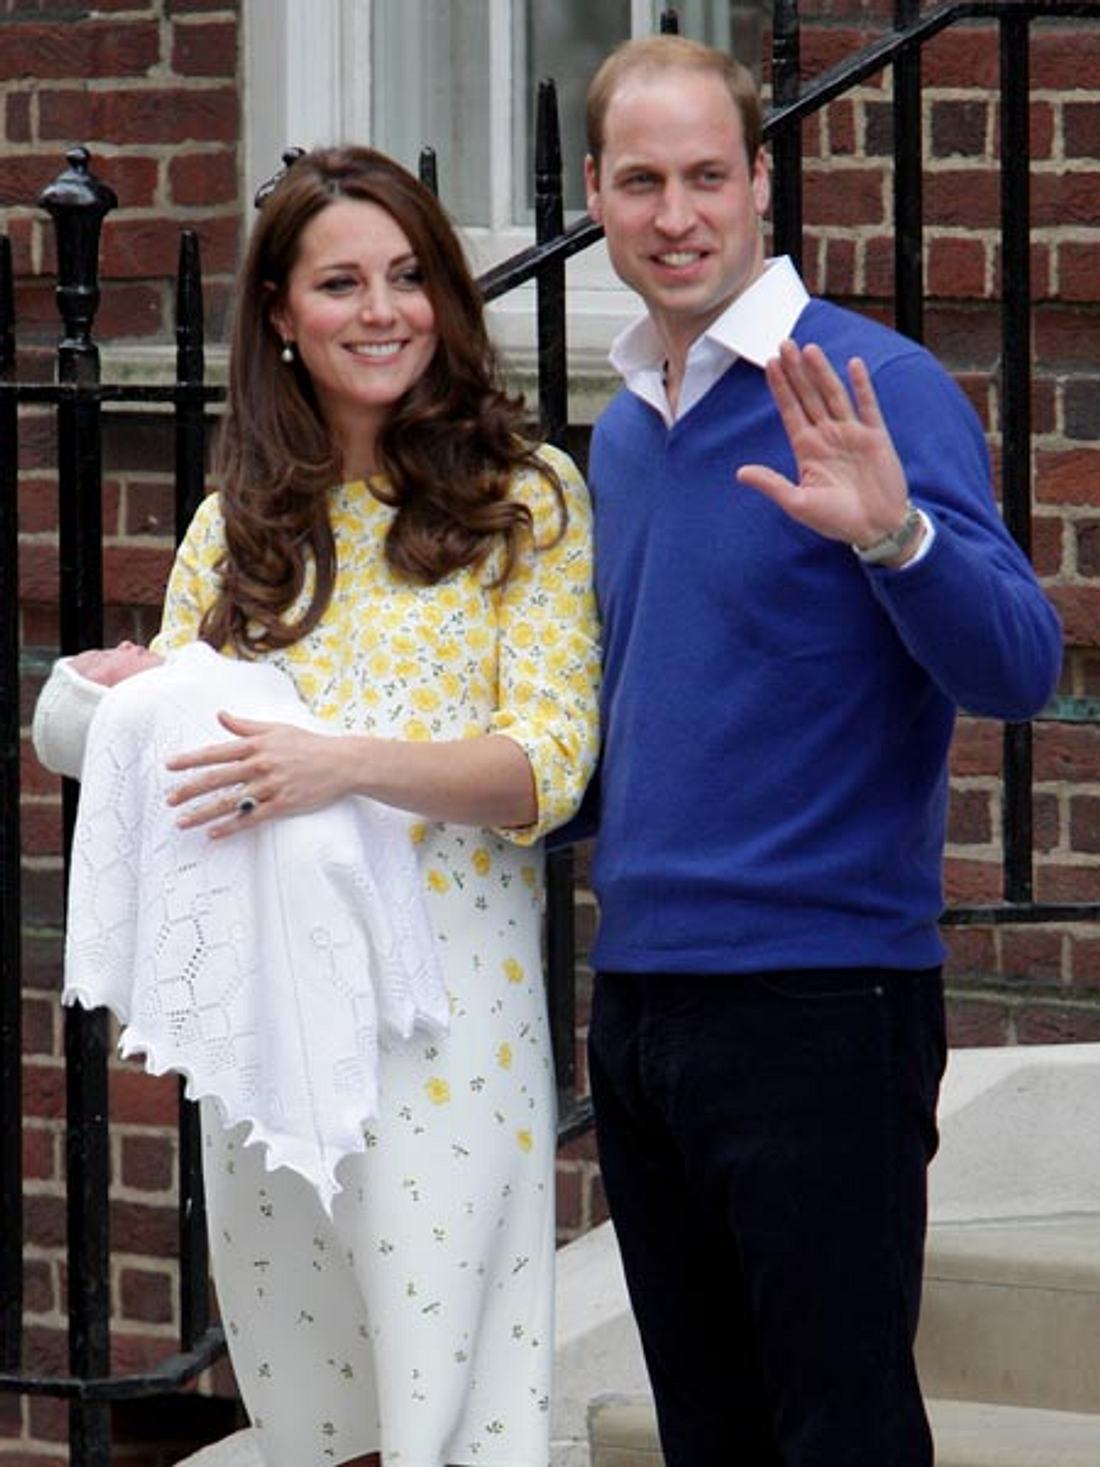 Die Briten wollen so aussehen wie die royale Familie.